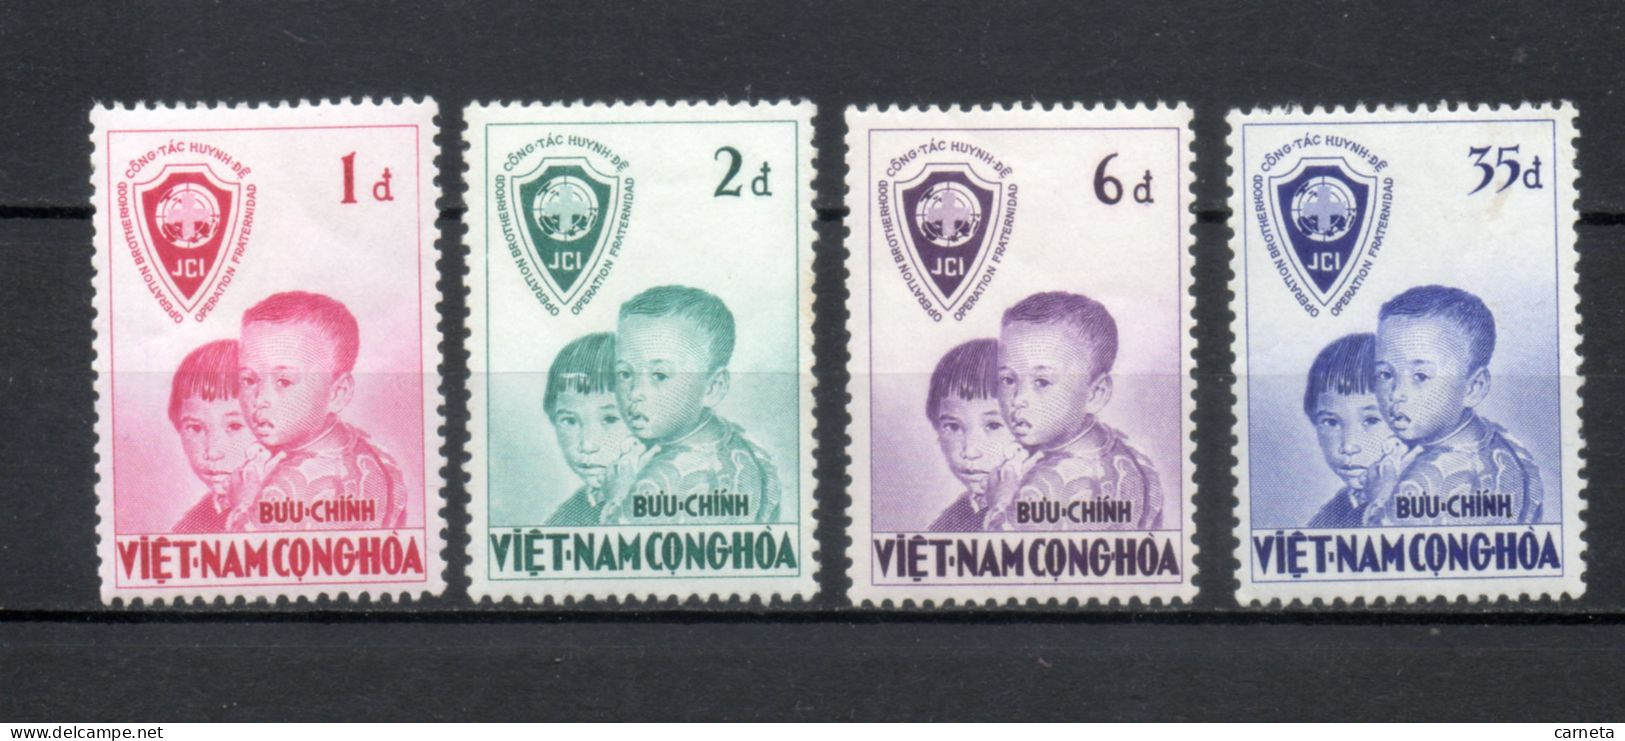 VIETNAM DU SUD   N° 61 à 64   NEUFS SANS CHARNIERE COTE 11.00€    FRATERNITE  VOIR DESCRIPTION - Vietnam